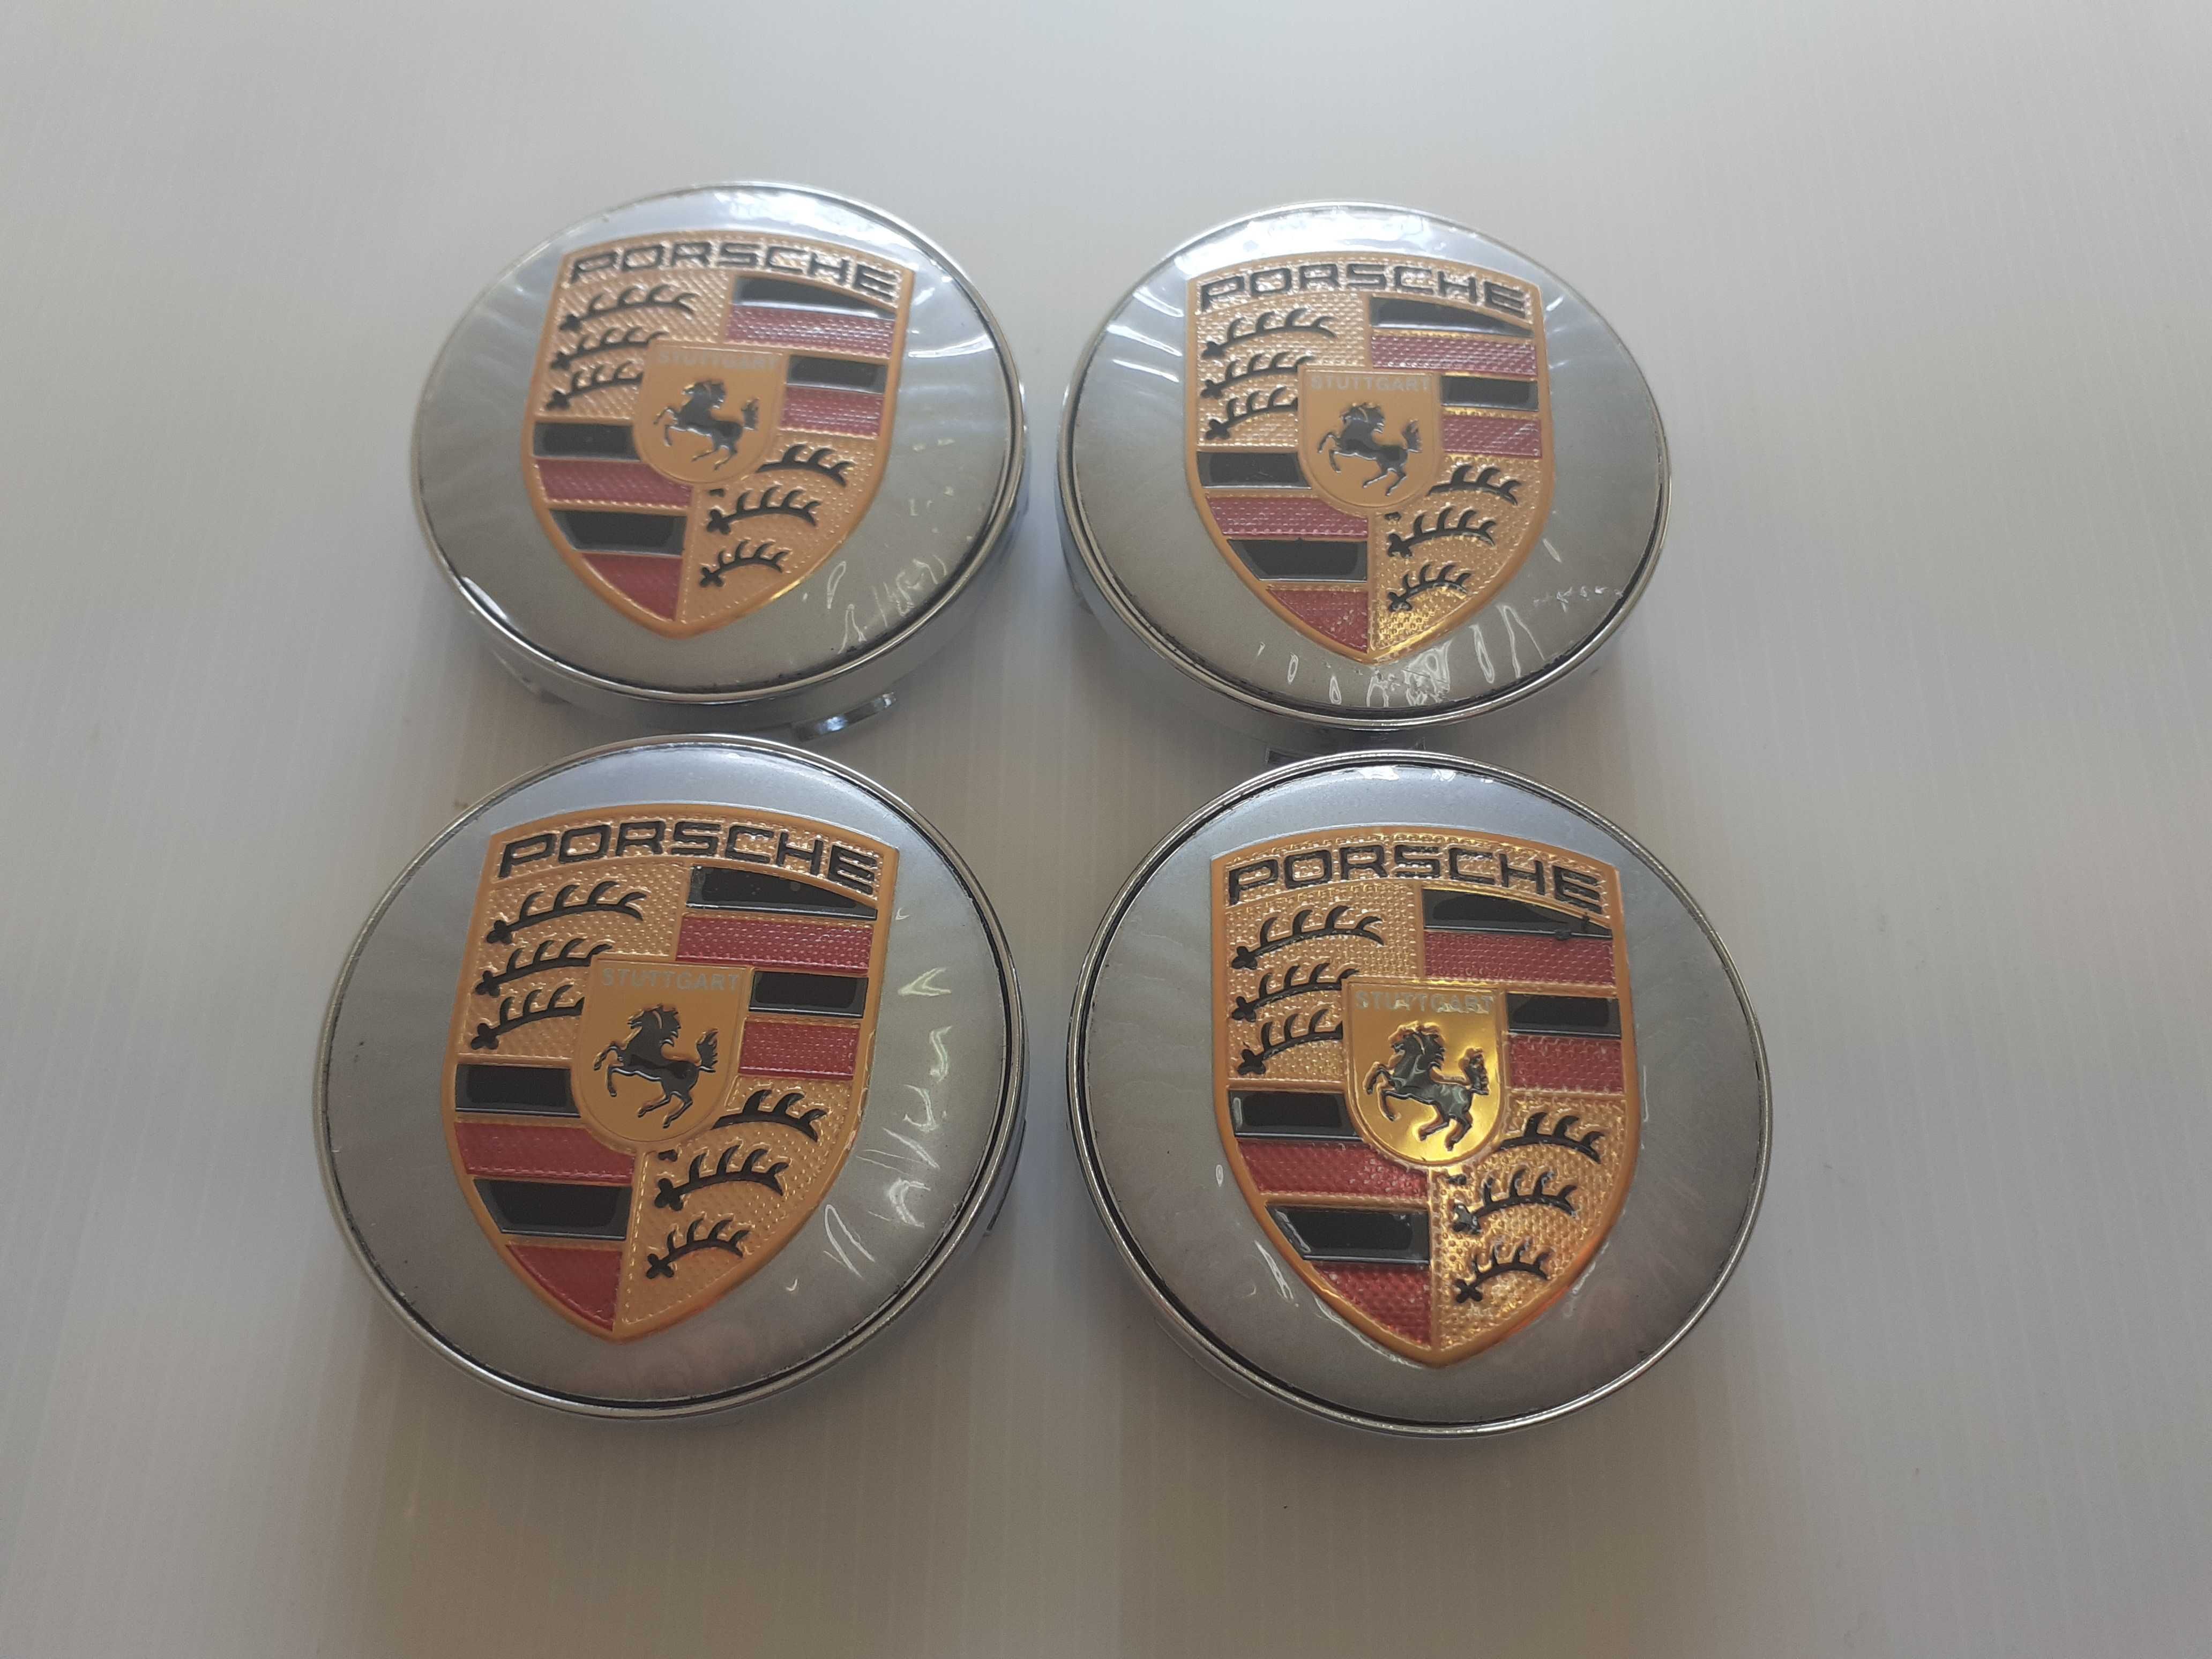 Centros/tampas de jante completos Porsche com 56, 60, 65, 68 e 76 mm